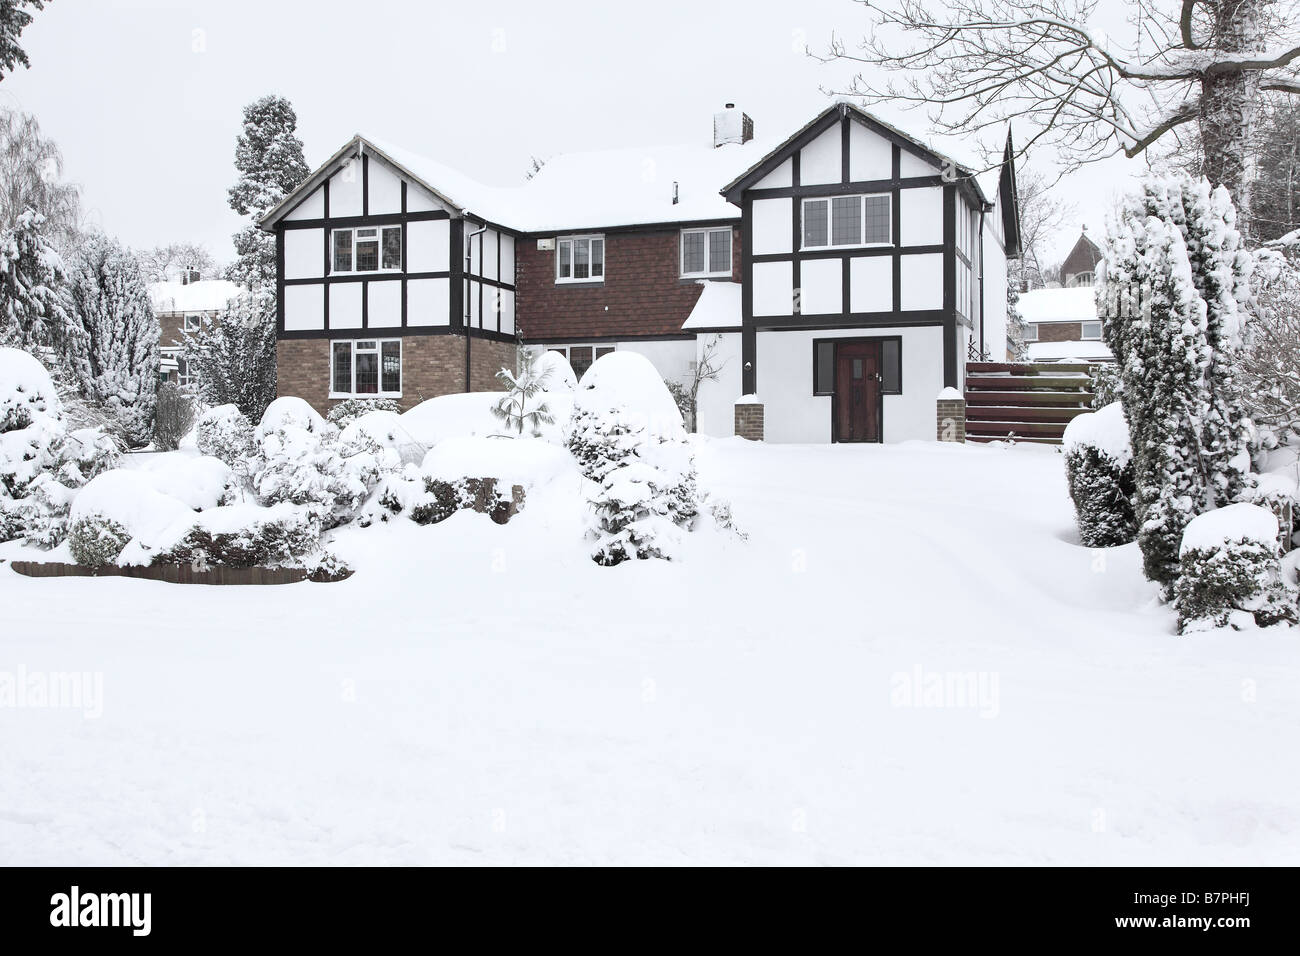 Vista frontale della casa unifamiliare in inverno con una coperta di neve Foto Stock